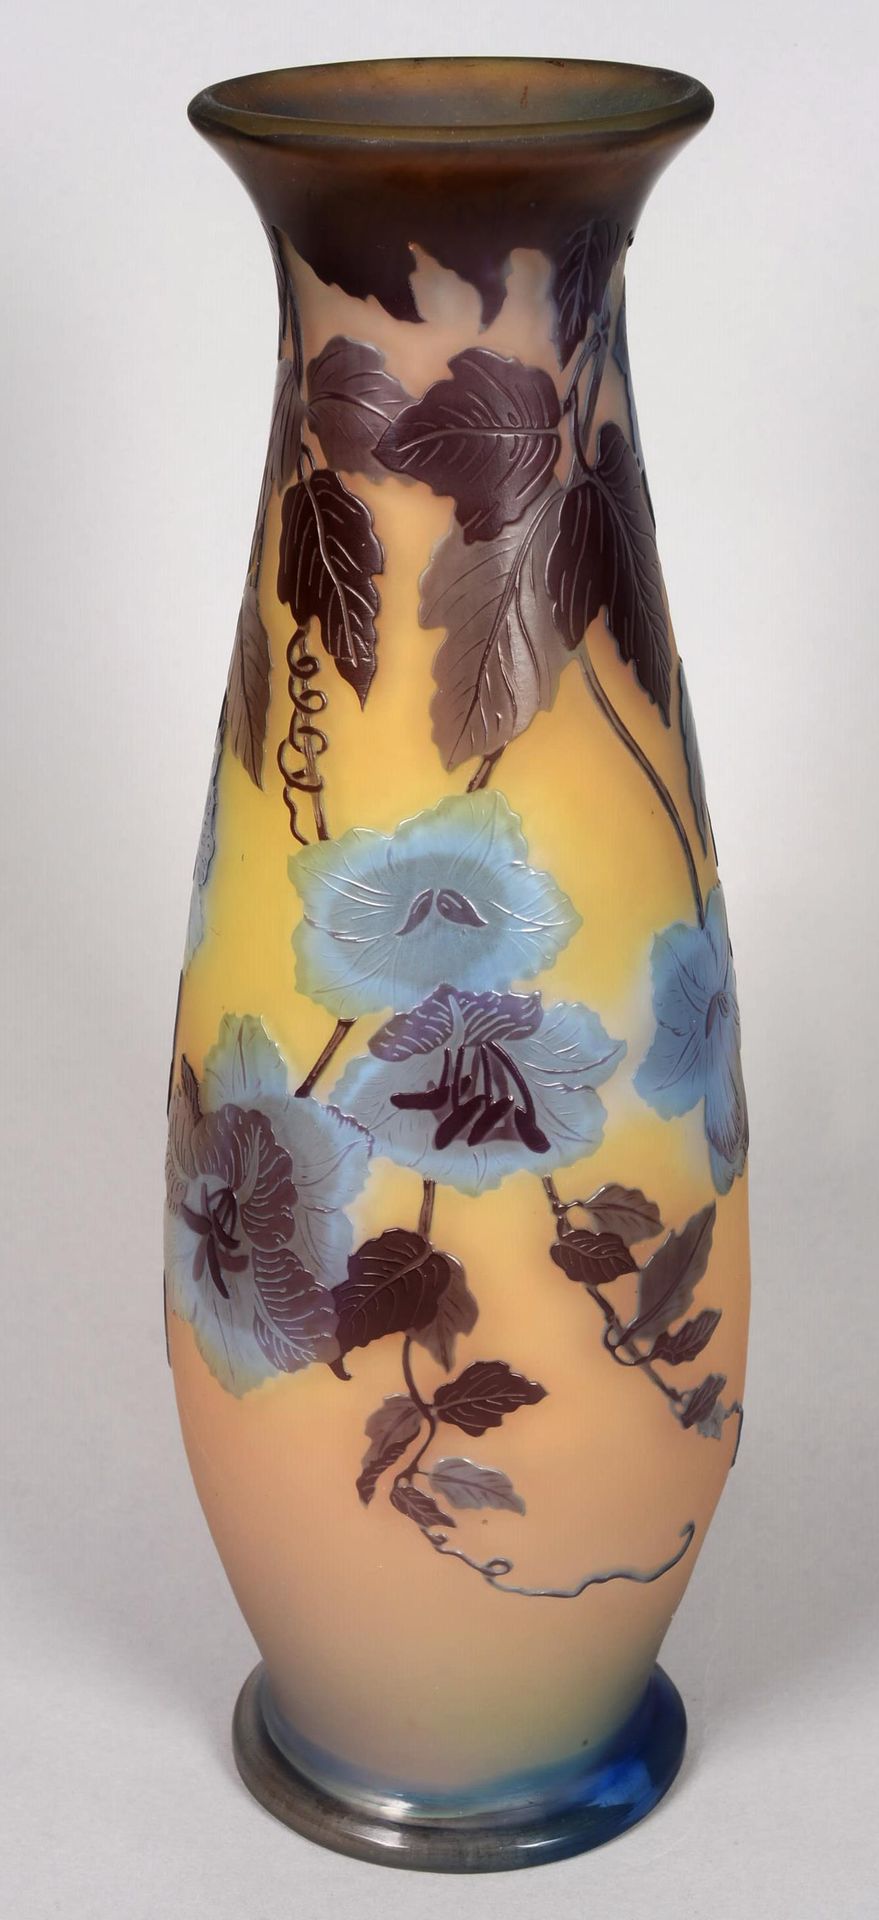 Null Émile GALLÉ (1846-1904)

Un vaso di vetro a più strati di forma balaustrata&hellip;